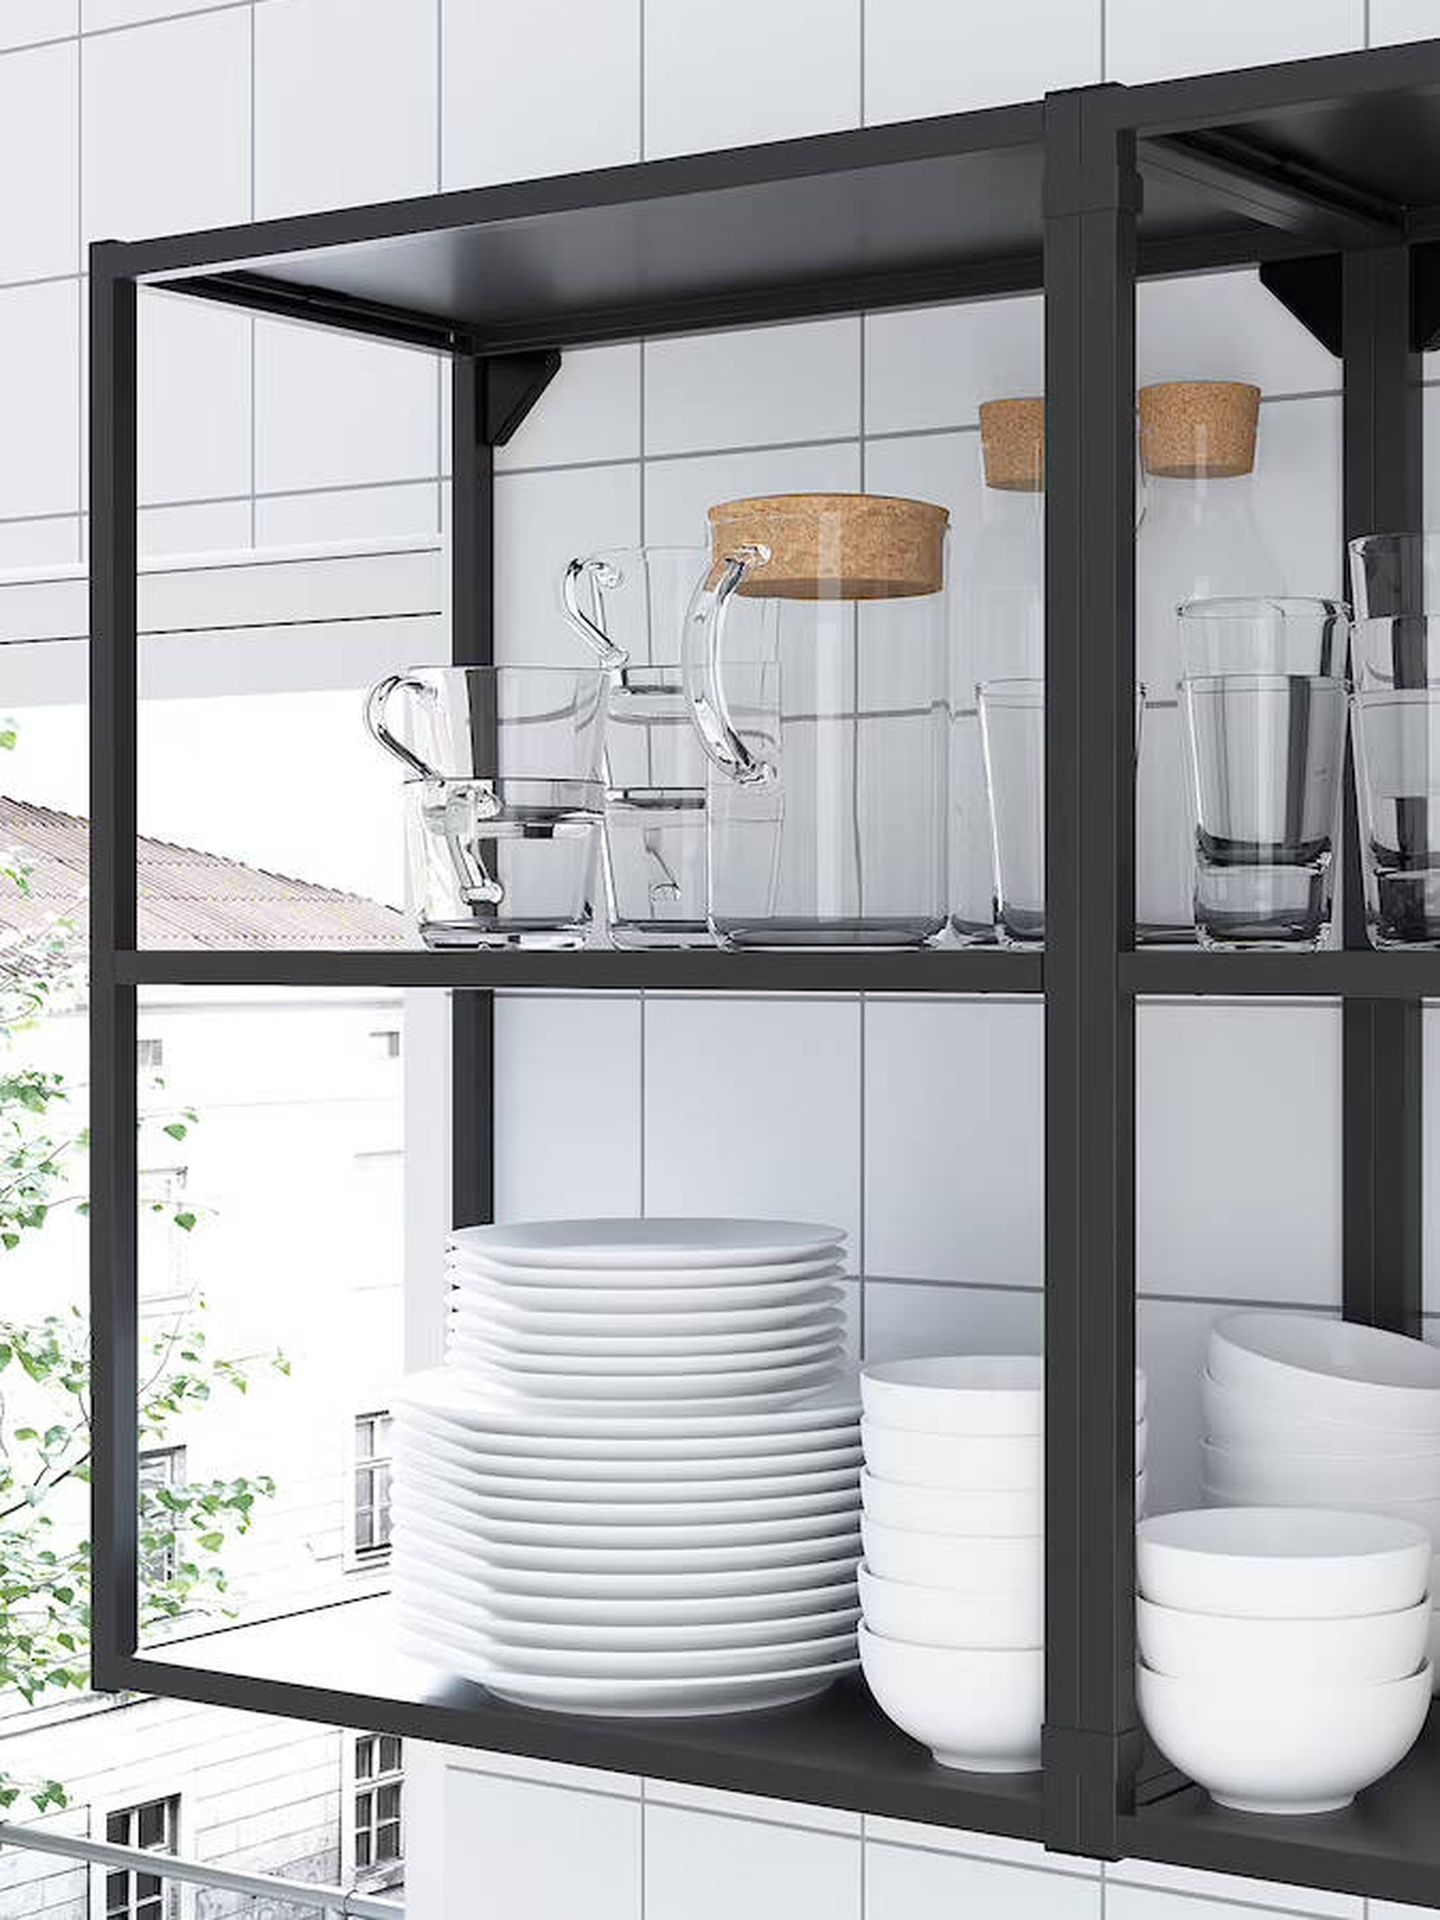 Muebles para una cocina siempre ordenada. (Cortesía/Ikea)